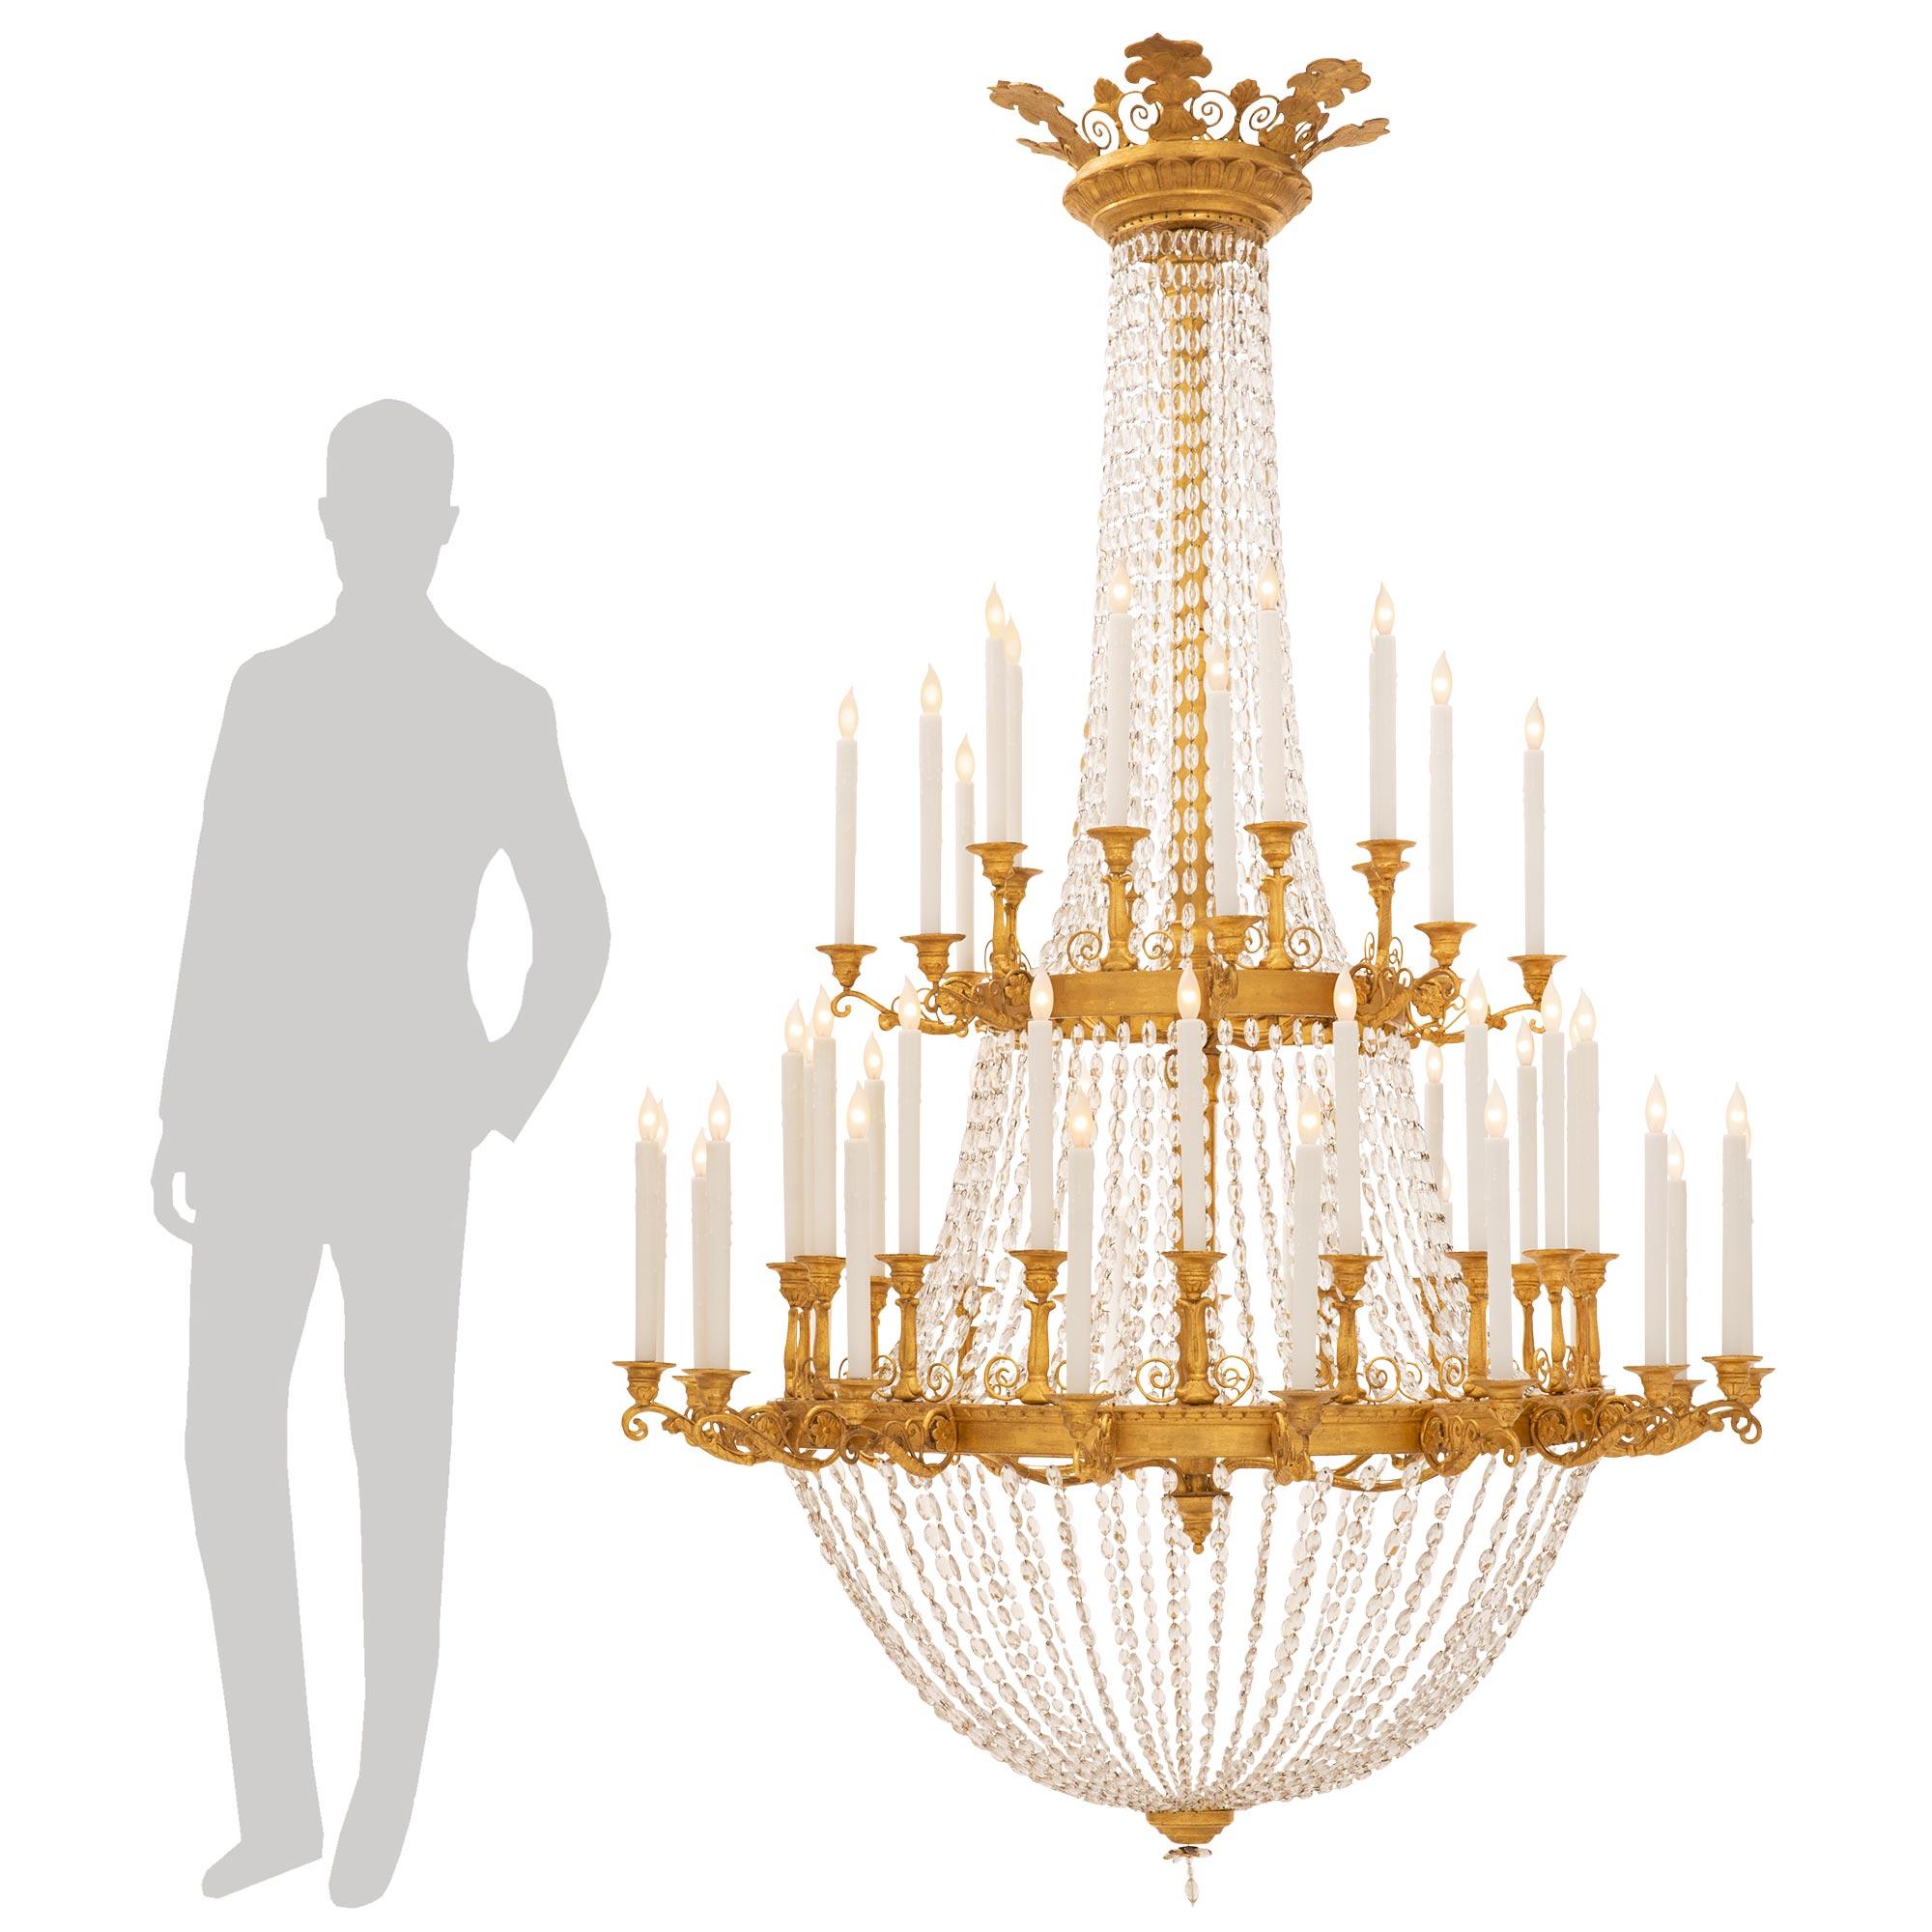 






Superbe lustre néoclassique italien du XVIIIe siècle en bois doré et cristal. Le lustre à deux niveaux et cinquante-deux bras est centré par un charmant fleuron inférieur en cristal et une réserve circulaire en bois doré tacheté, d'où un